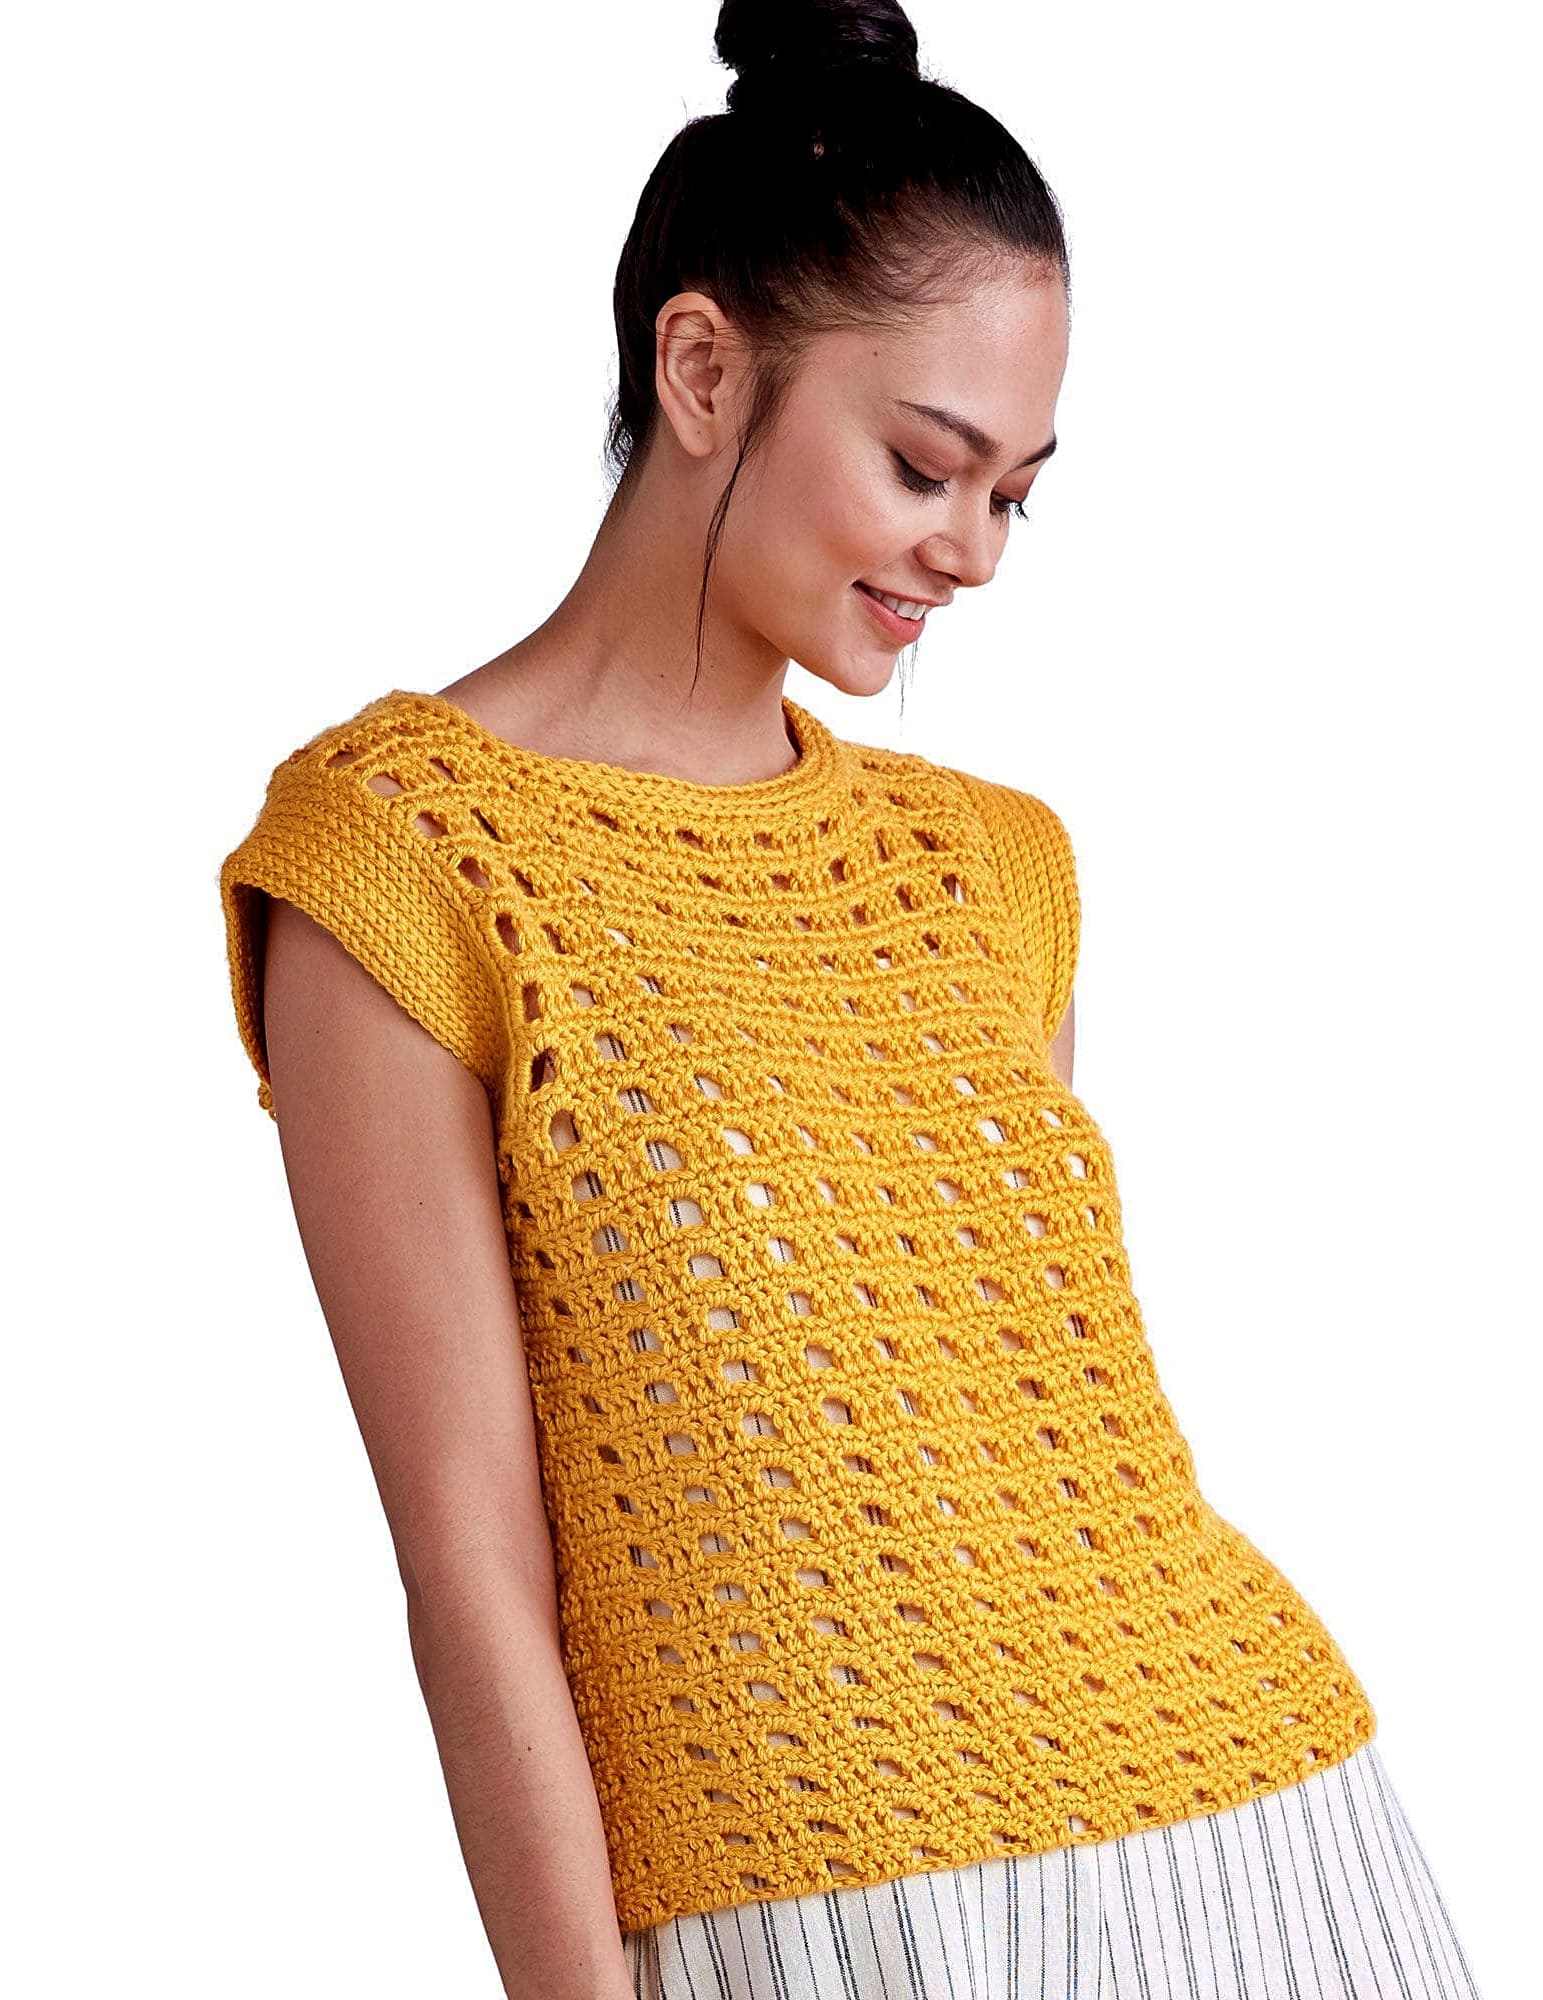 YELLOW CROCHET TOP 55 | Crochet Patterns Ideas